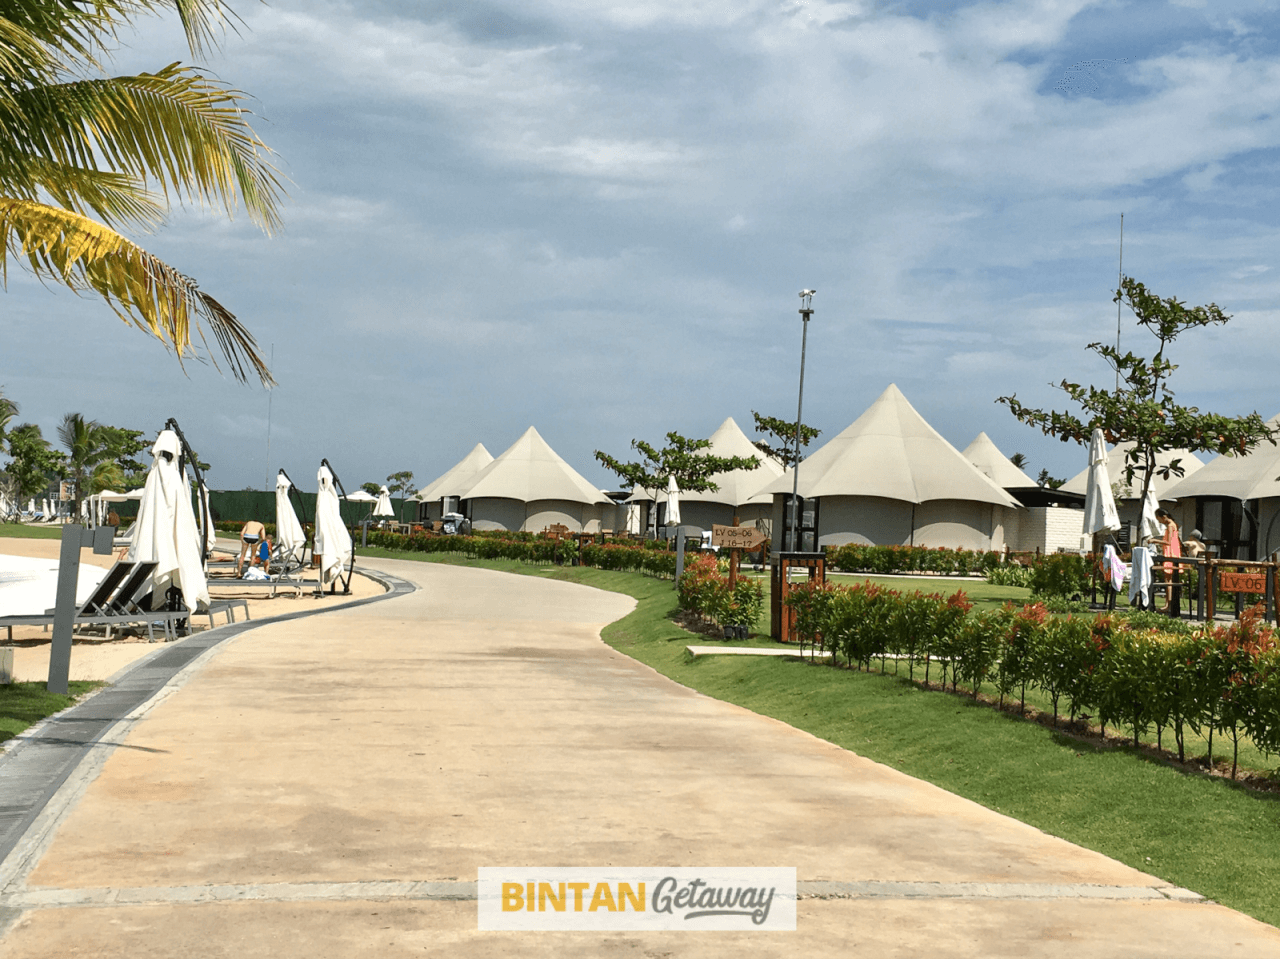 The Canopi Resort Bintan